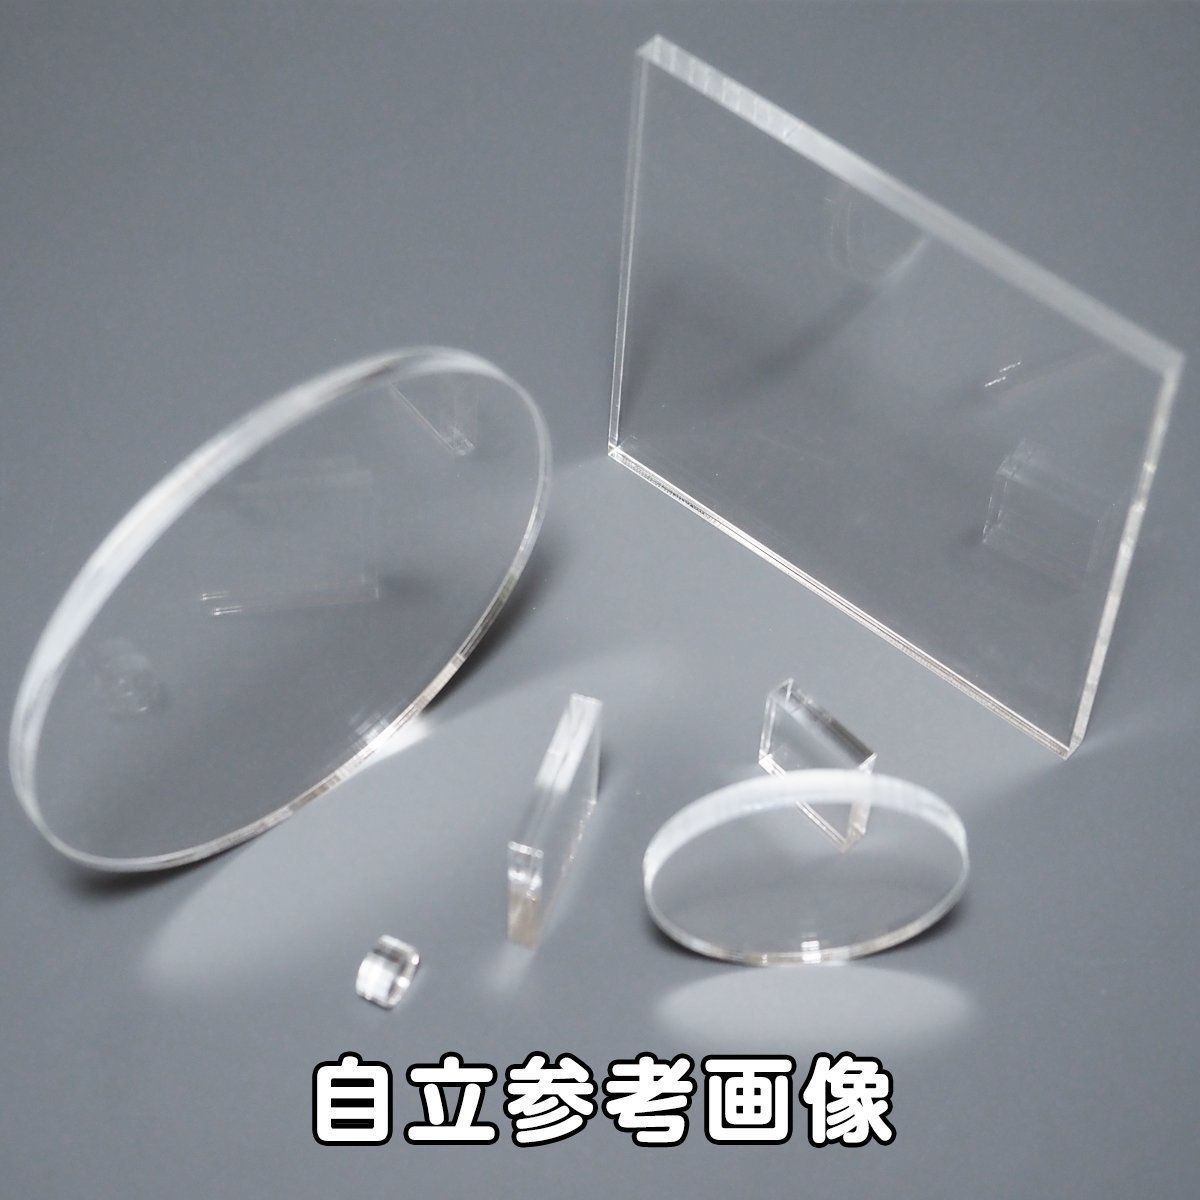 透明ポリカーボネート板4㍉厚x800x1600(幅x長さ㍉) - 工具、DIY用品